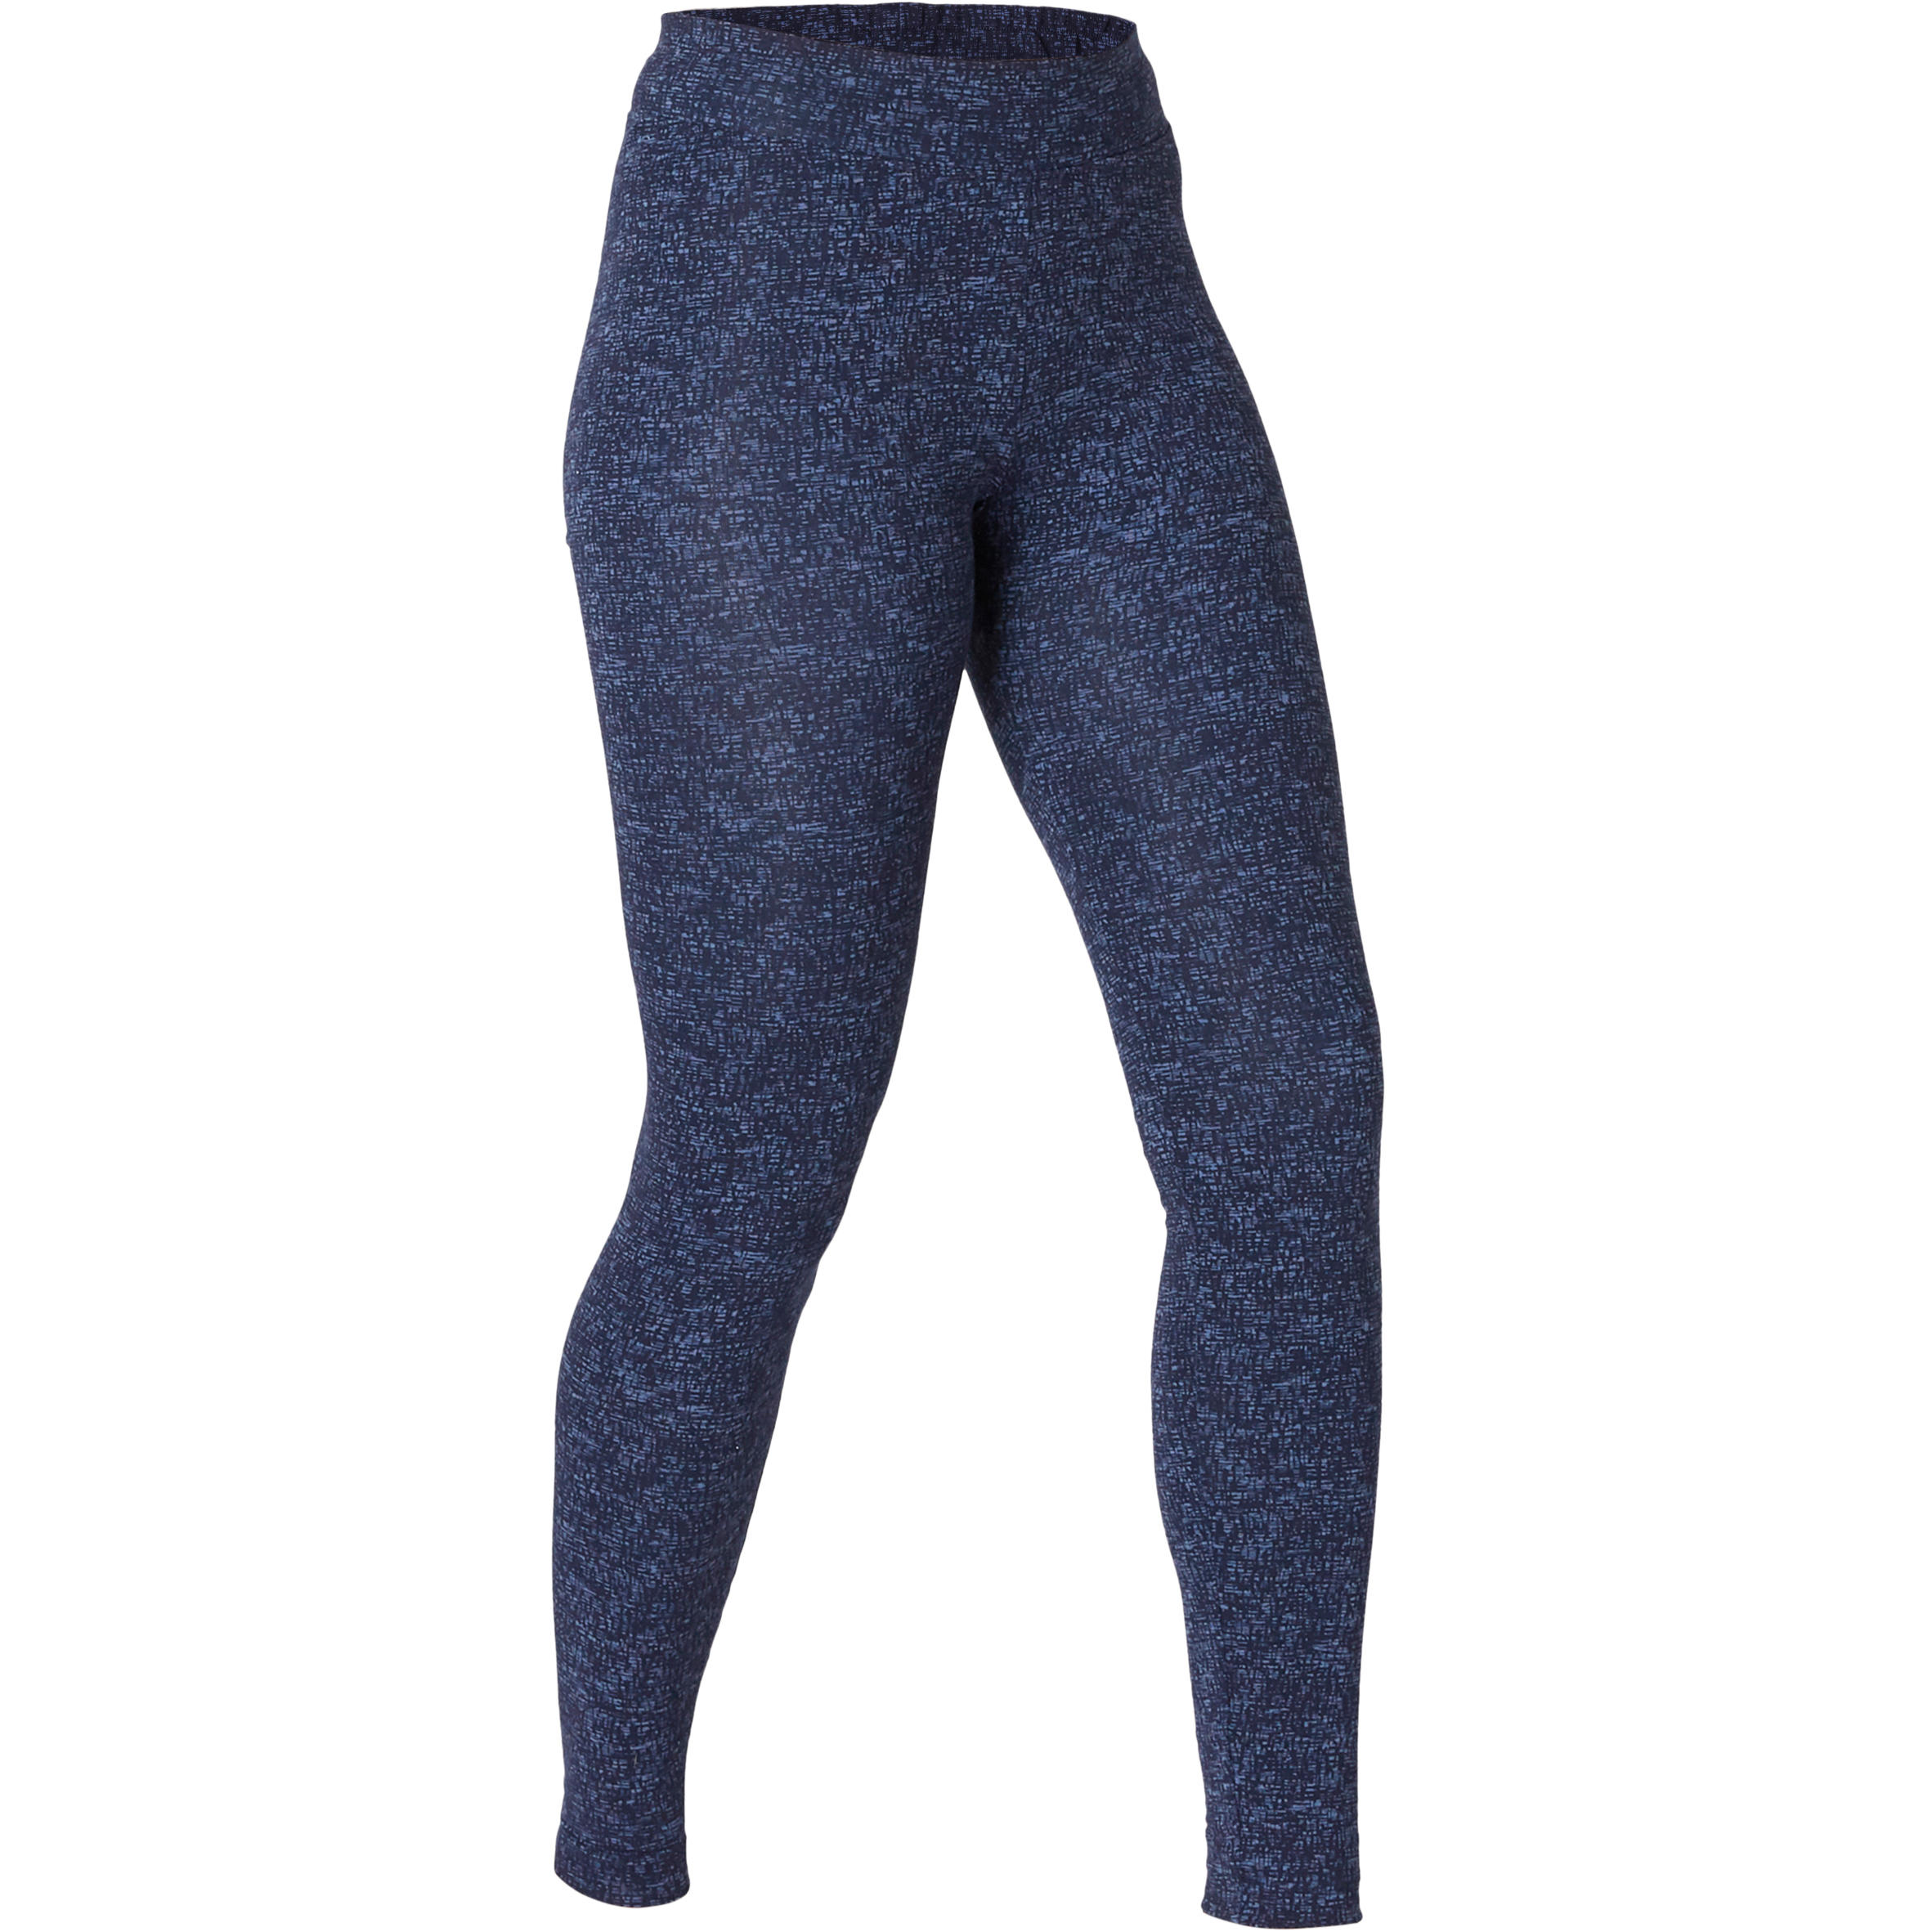 Full Length Leggings With Cobalt Blue Snake Print For Women – MICHELLE  SALINS